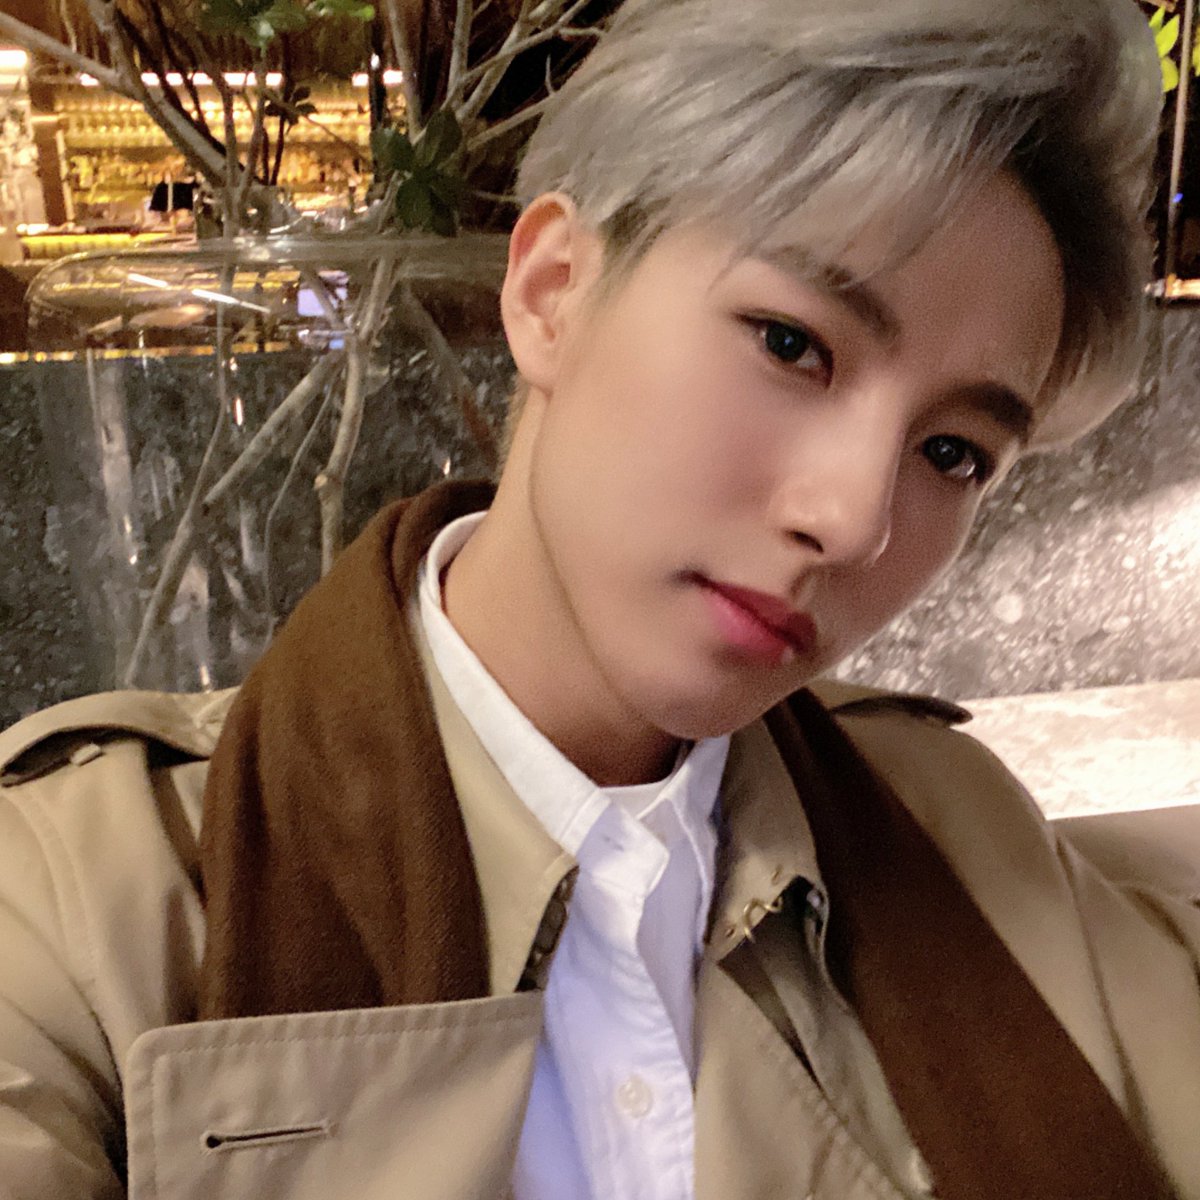 renjun being more attractive than noah beck – a long thread https://twitter.com/tyler01010101/status/1317302580167512065